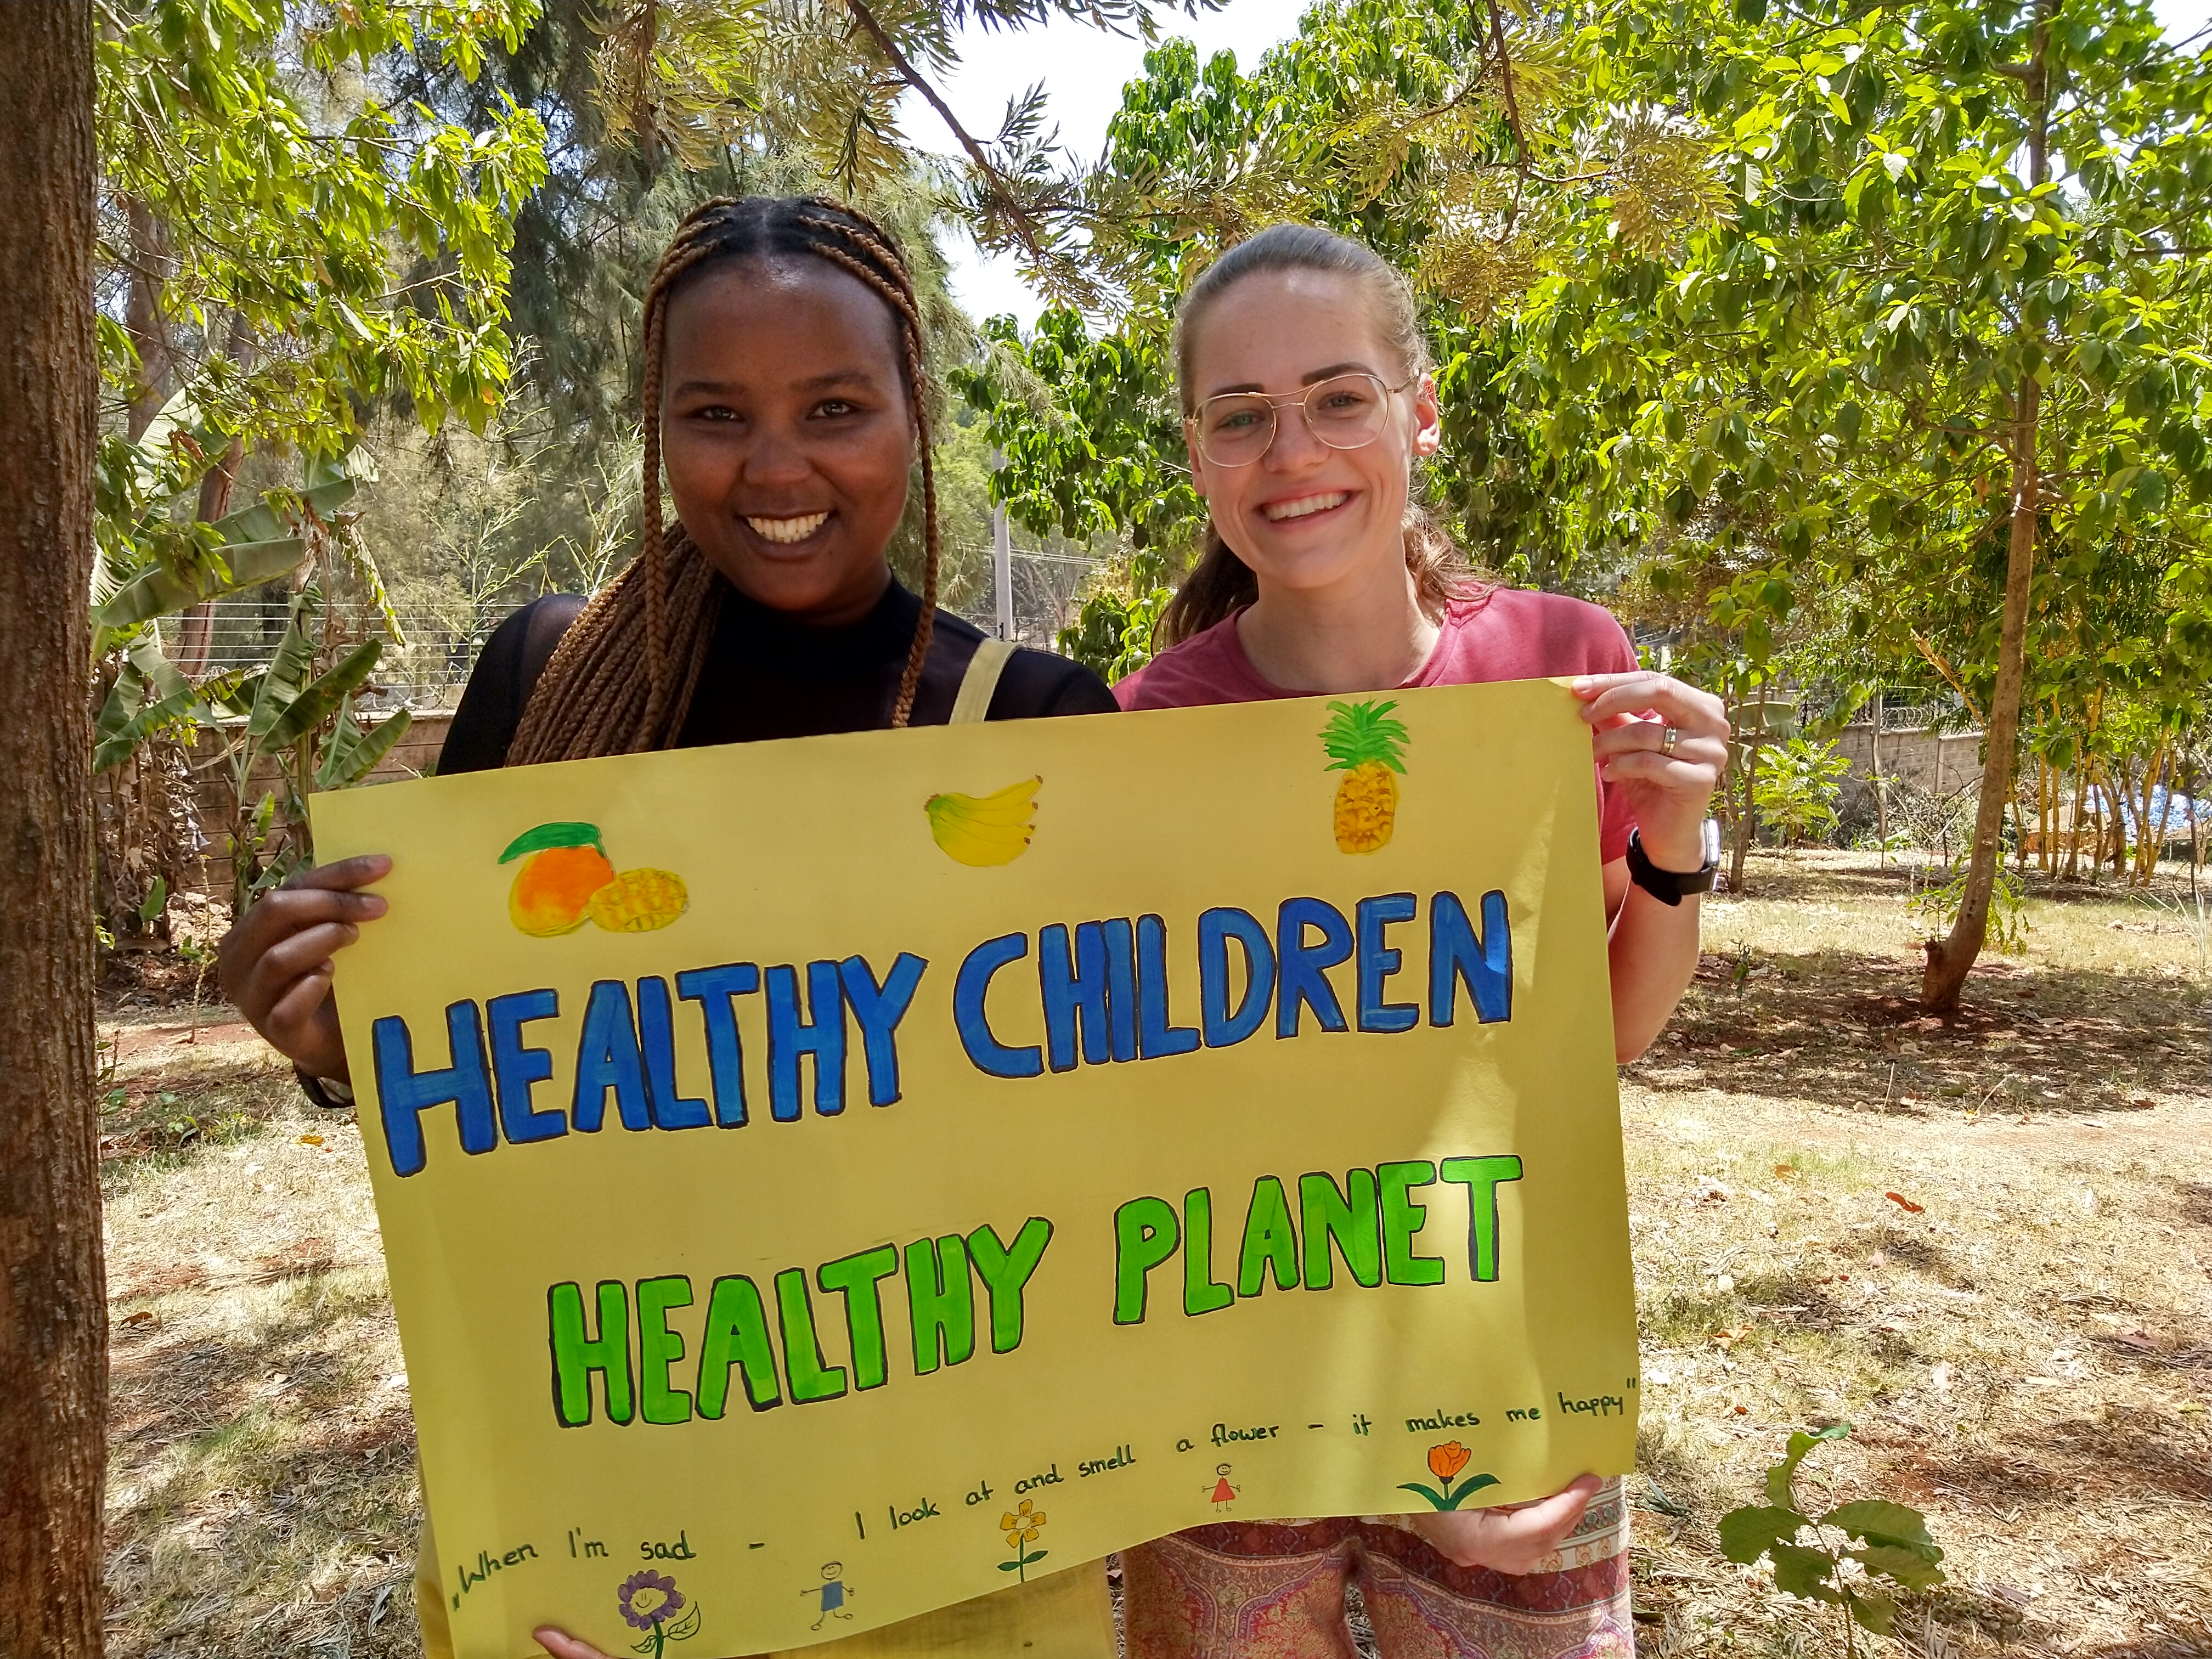 Das Bild zeigt zwei junge Frauen. Sie halten ein Plakat, auf dem „Healthy Children, healthy Planet“ steht.